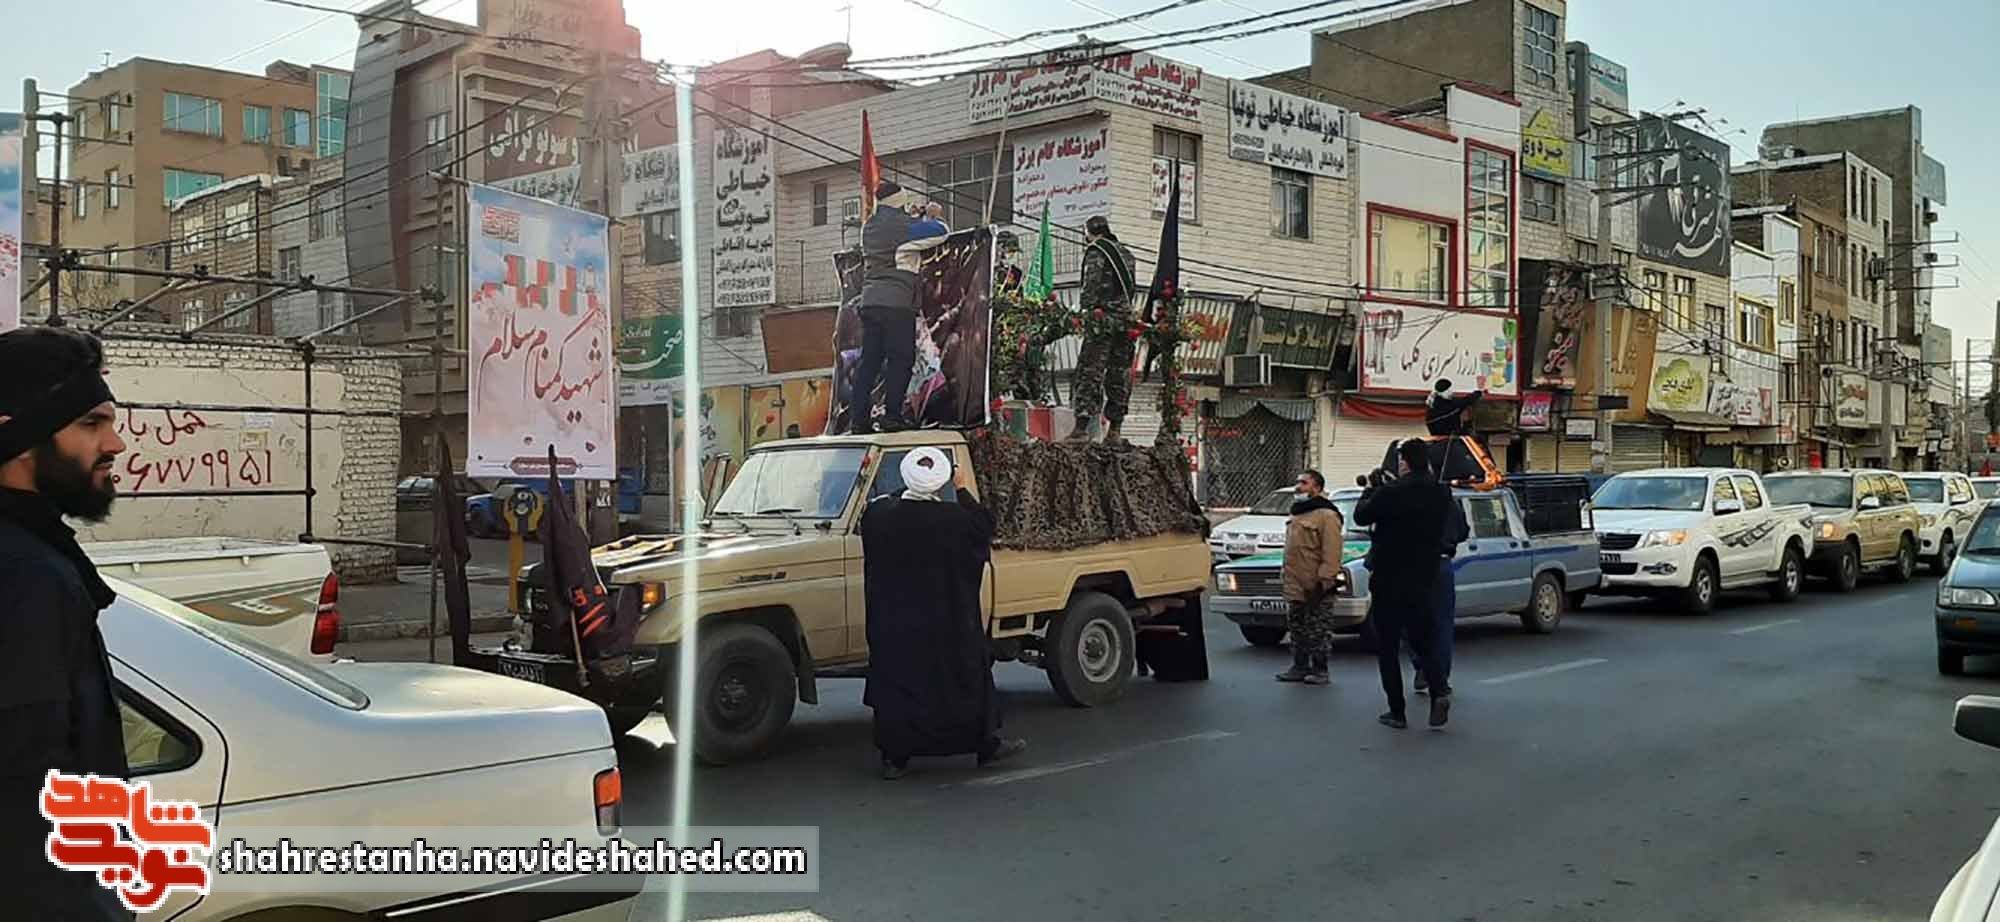 ملارد؛ شهر شهدای اقتدار و امنیت میزبان شهید گمنام